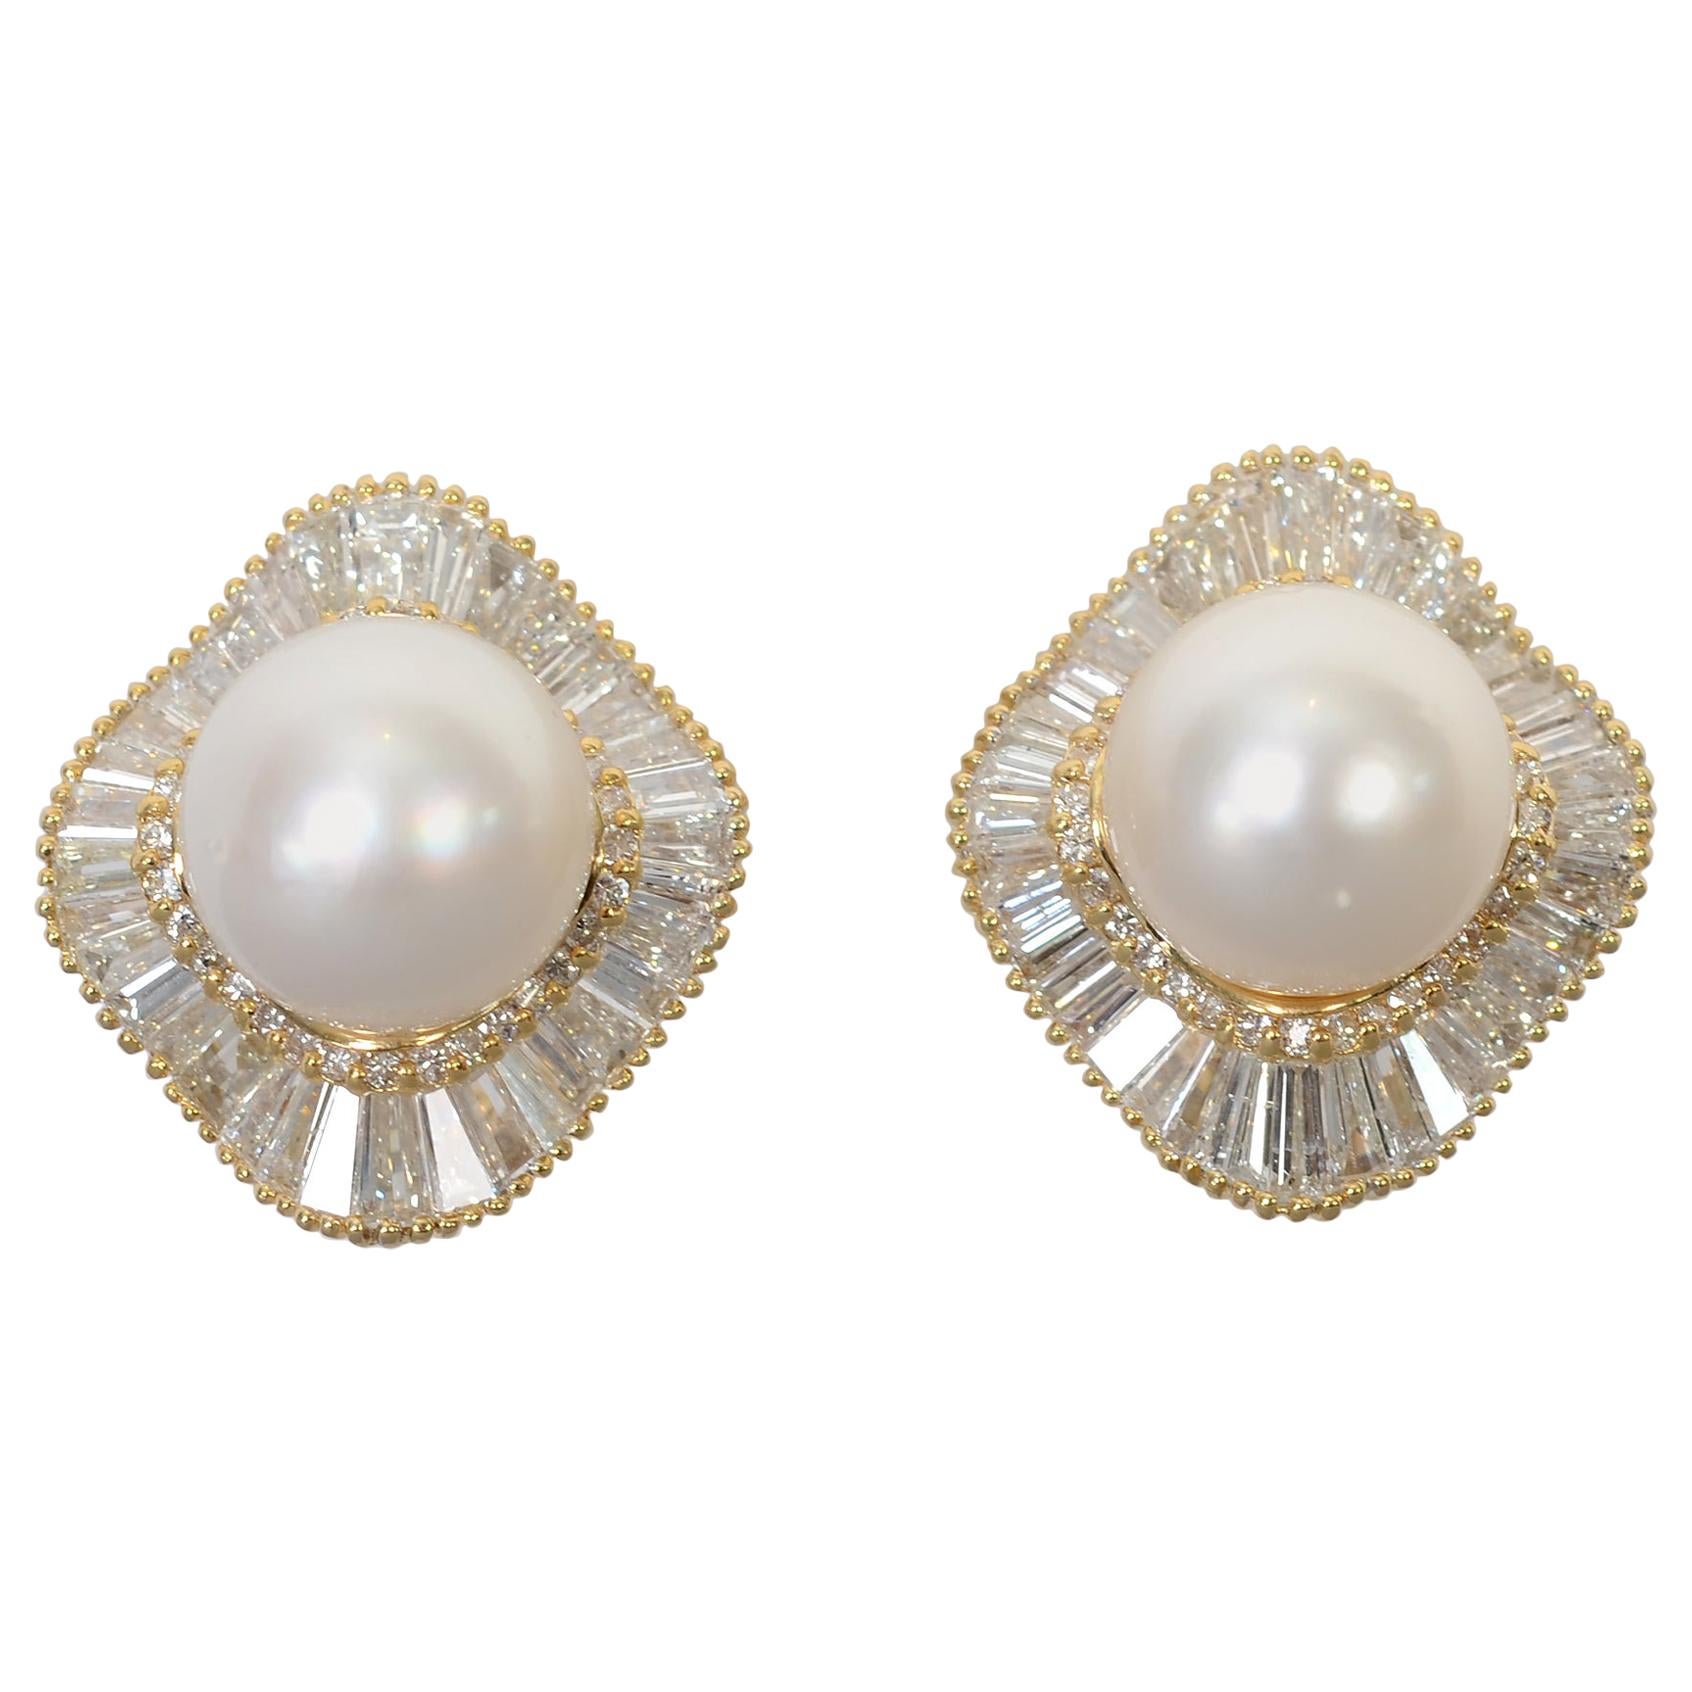 Huge Pearl and Diamond Earrings